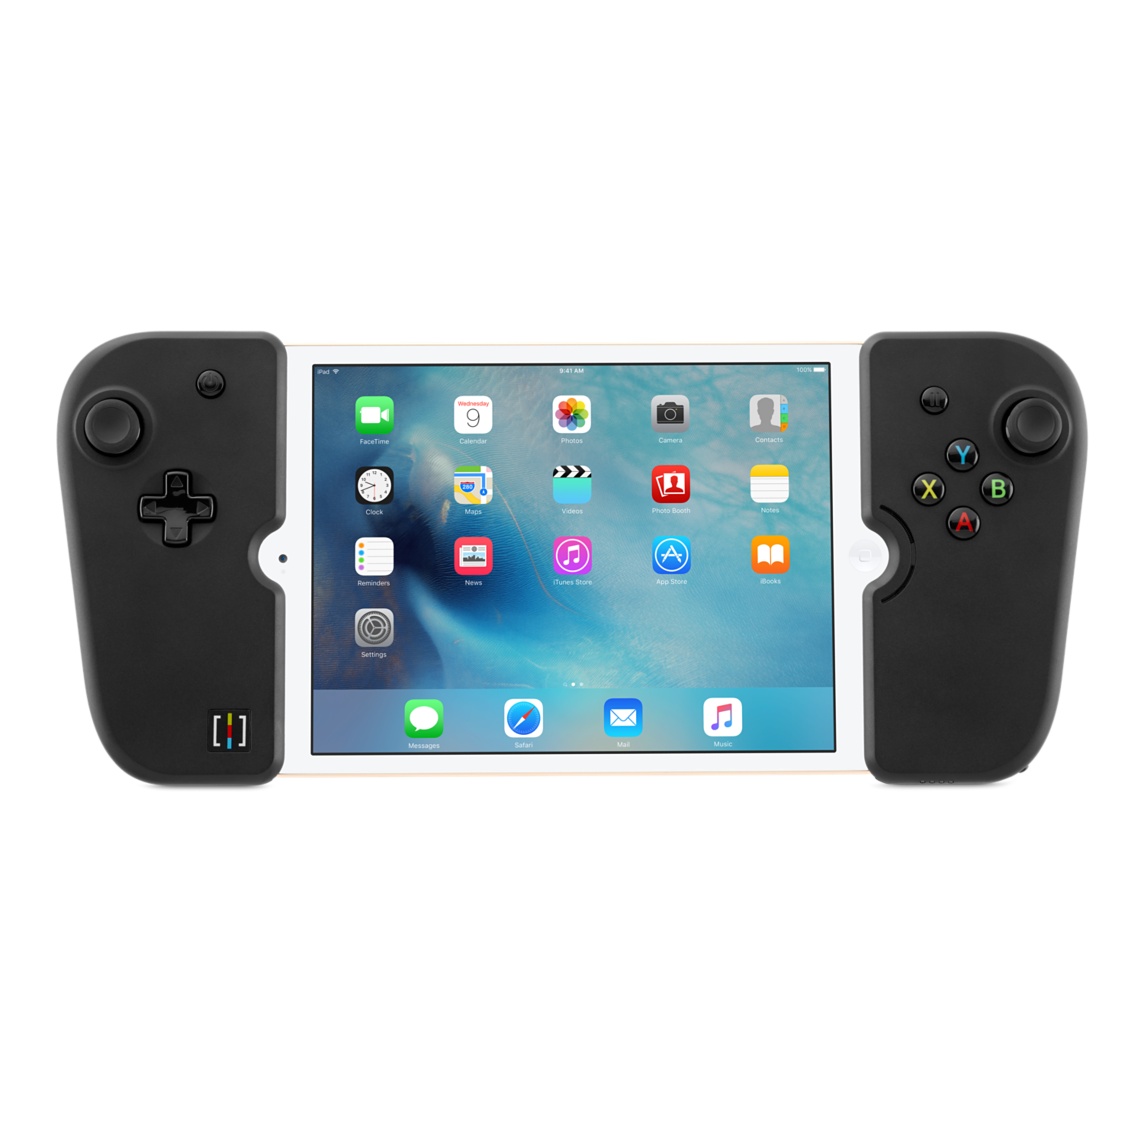 Gamevice lança joystick ideal para jogar no iPad